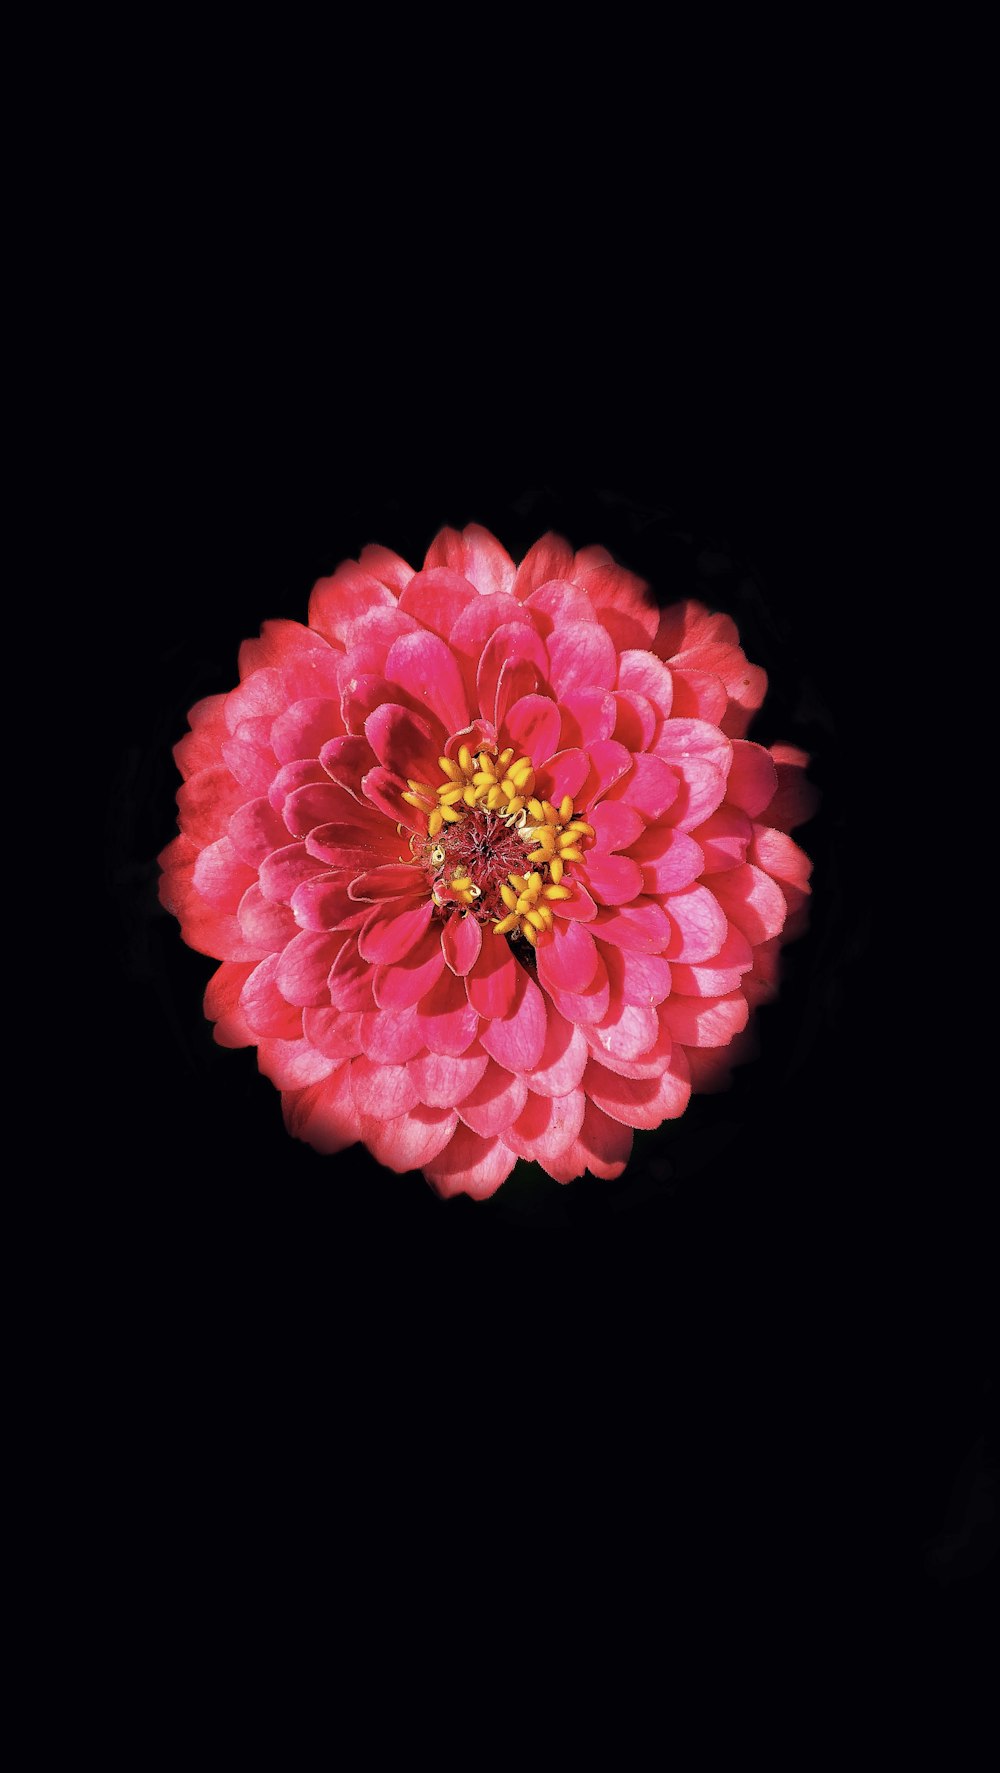 黒の背景にピンクの花の写真 Unsplashの無料花写真